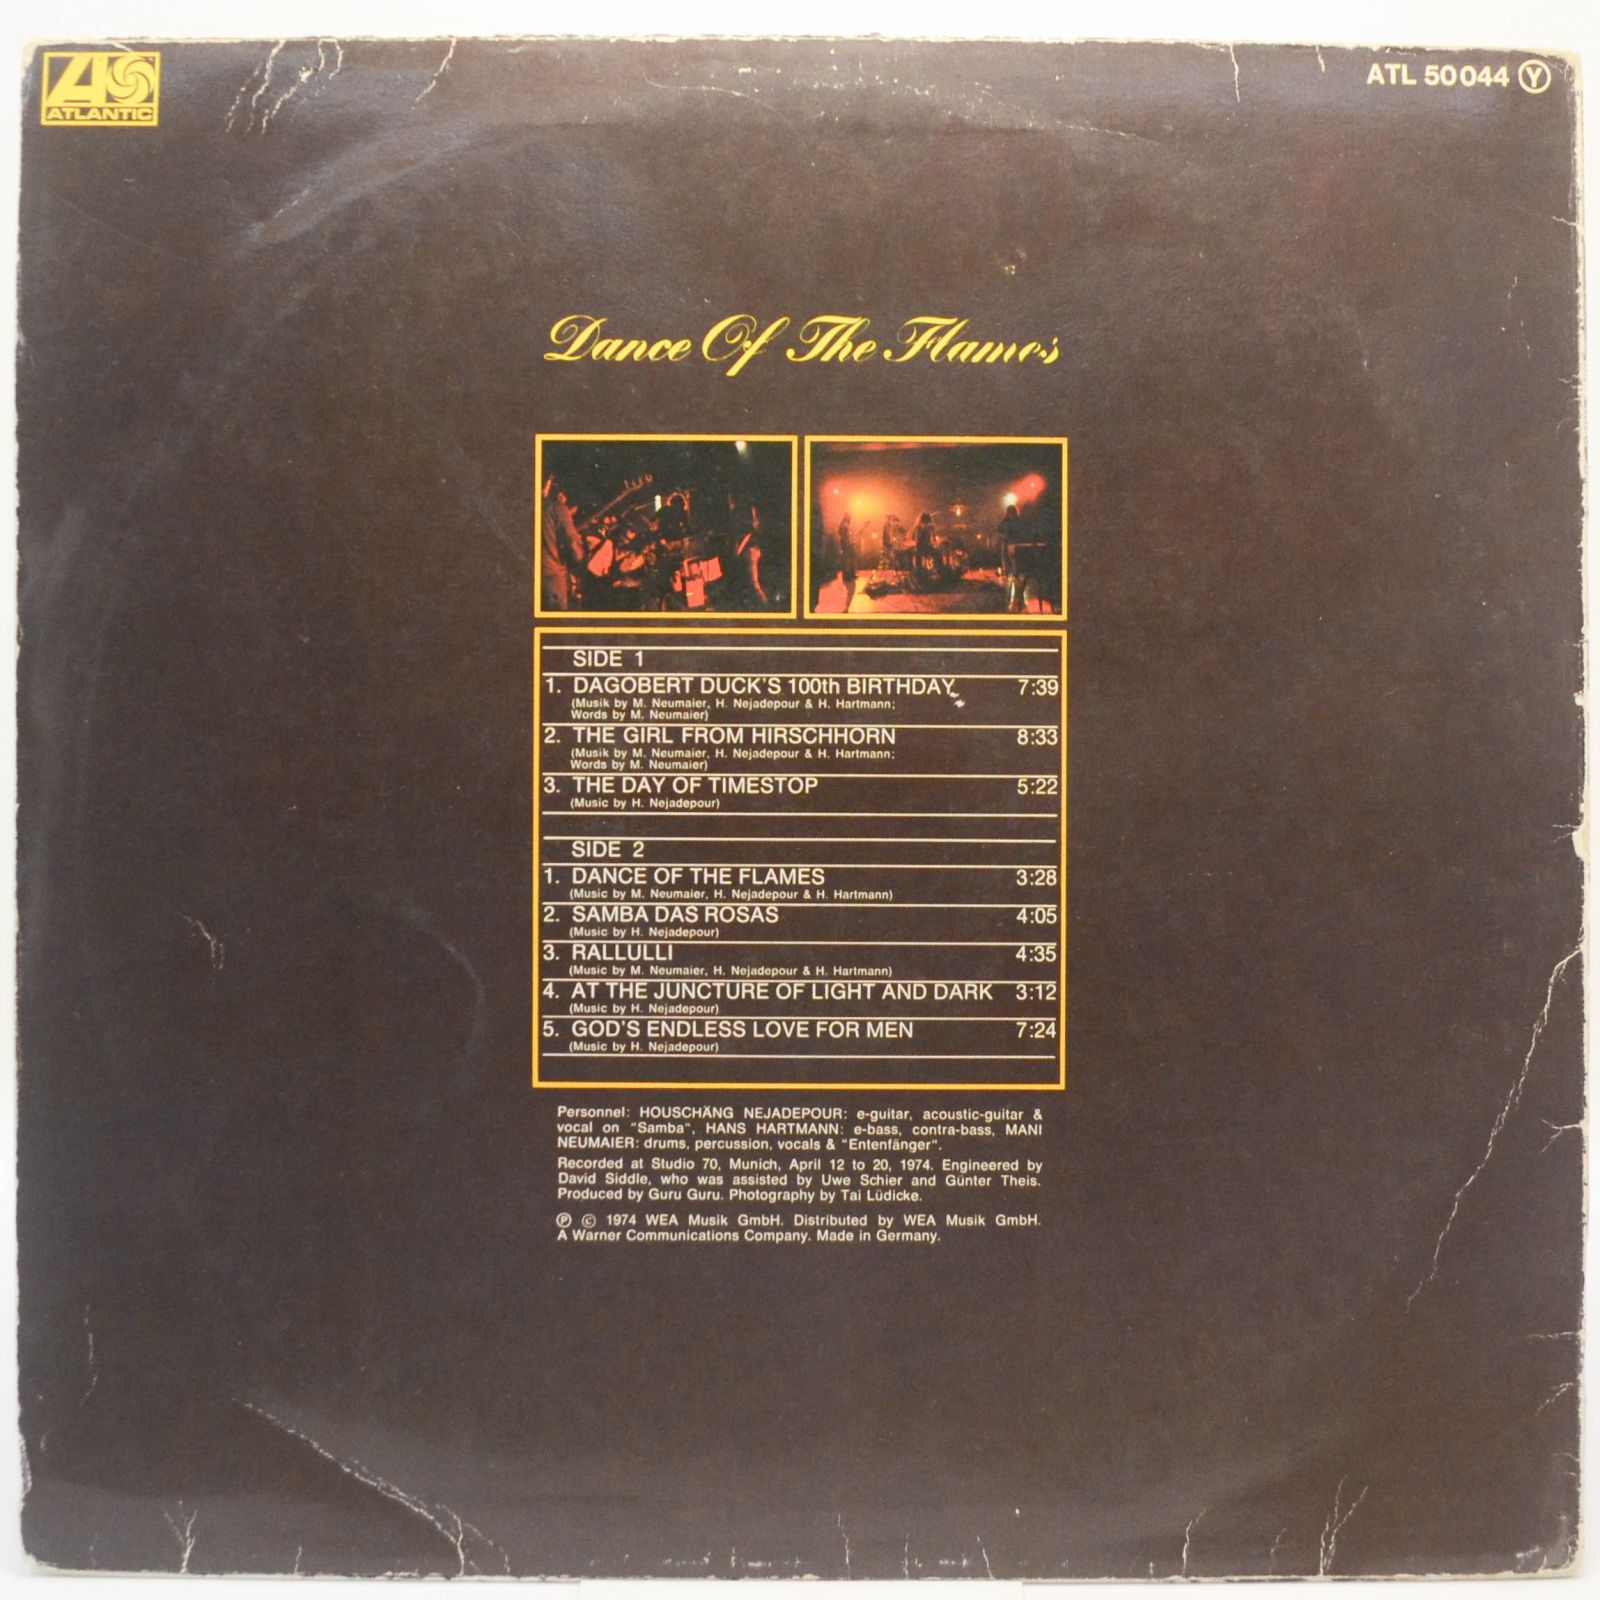 Guru Guru — Dance Of The Flames, 1974